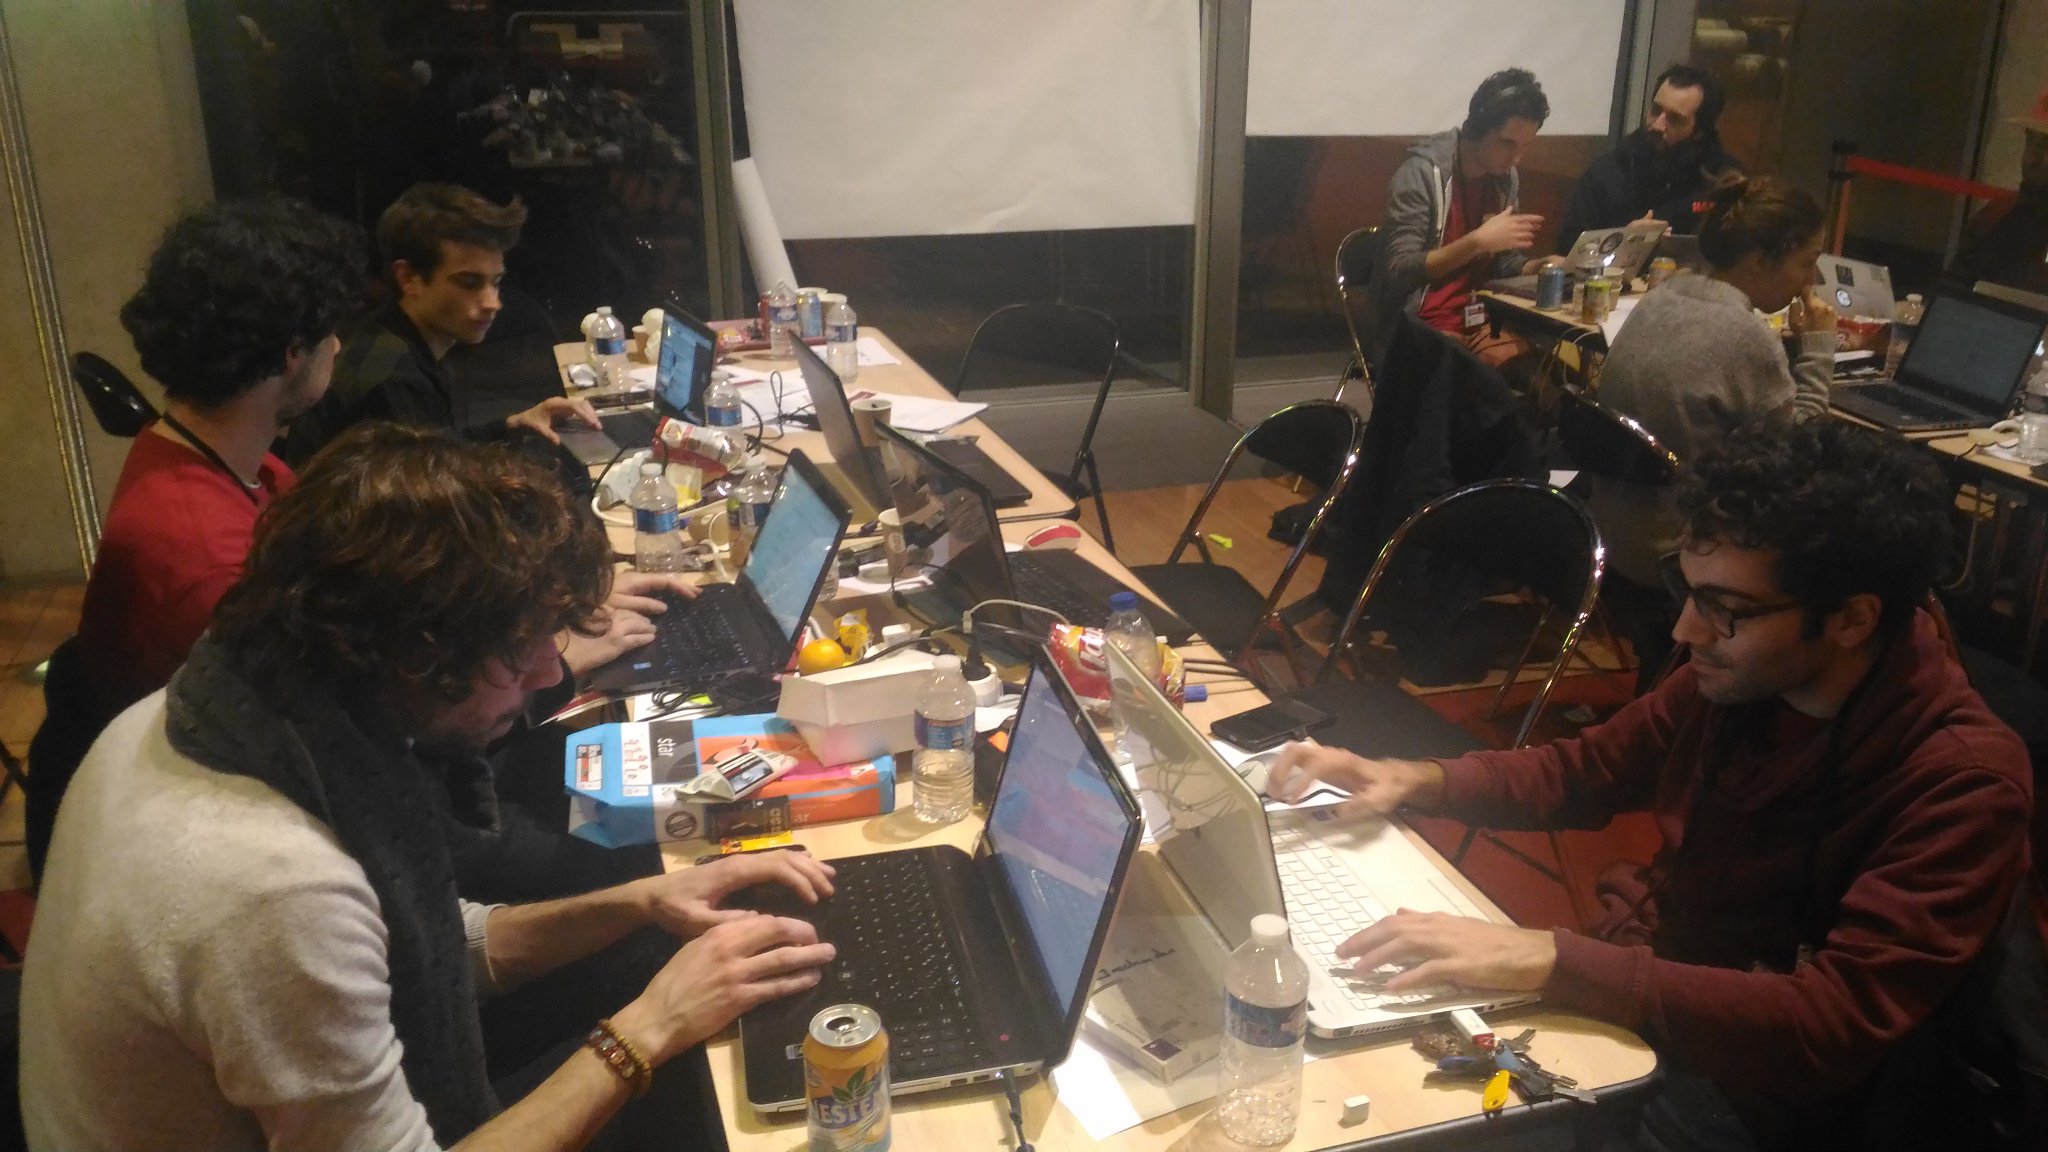 01:32 : les 6 valeureux membres de #Gallicarte toujours au complet ! #hackathonBnF https://t.co/1Q28MxXWzf